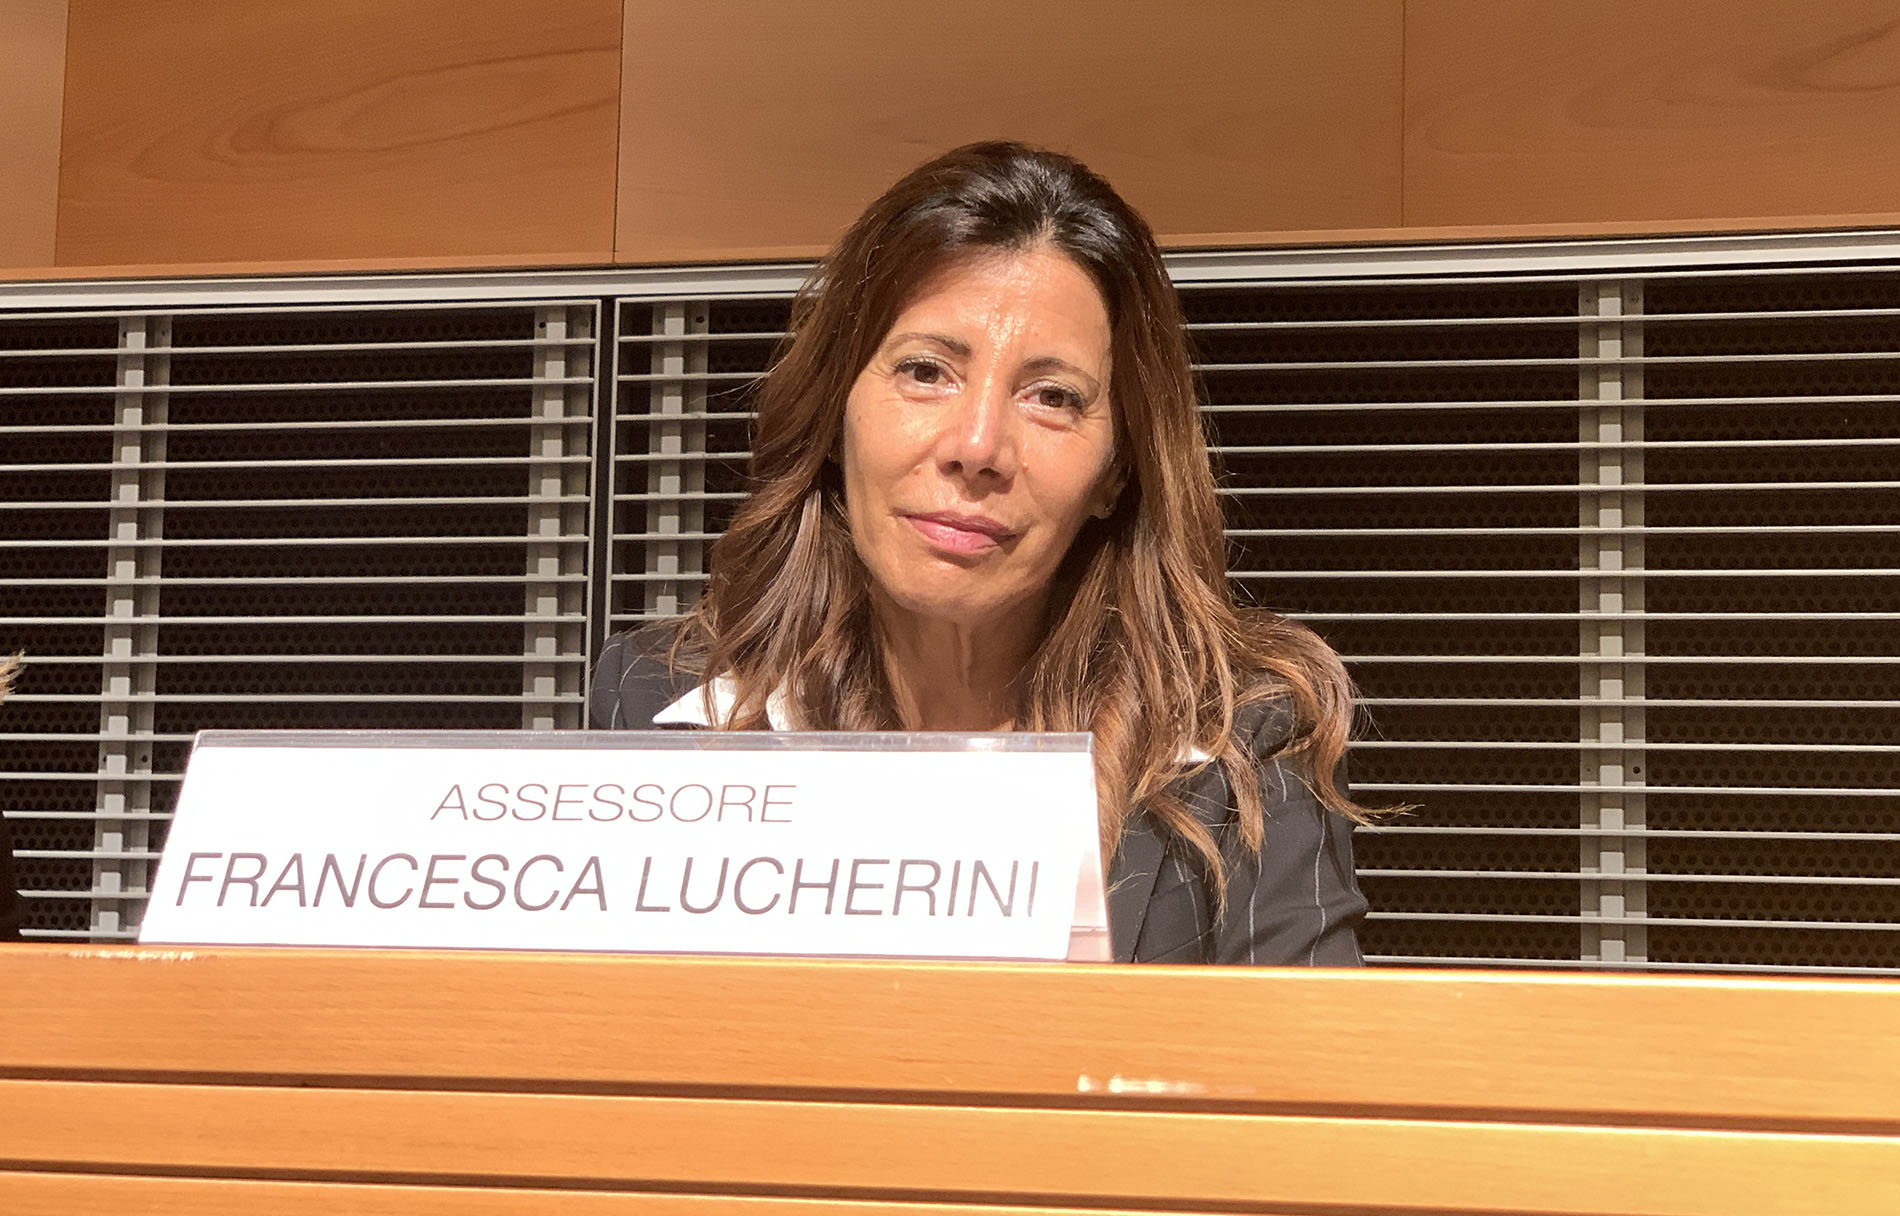 Francesca Lucherini: “Archivio storico: per le pratiche edilizie più ore, più personale e in futuro la digitalizzazione”